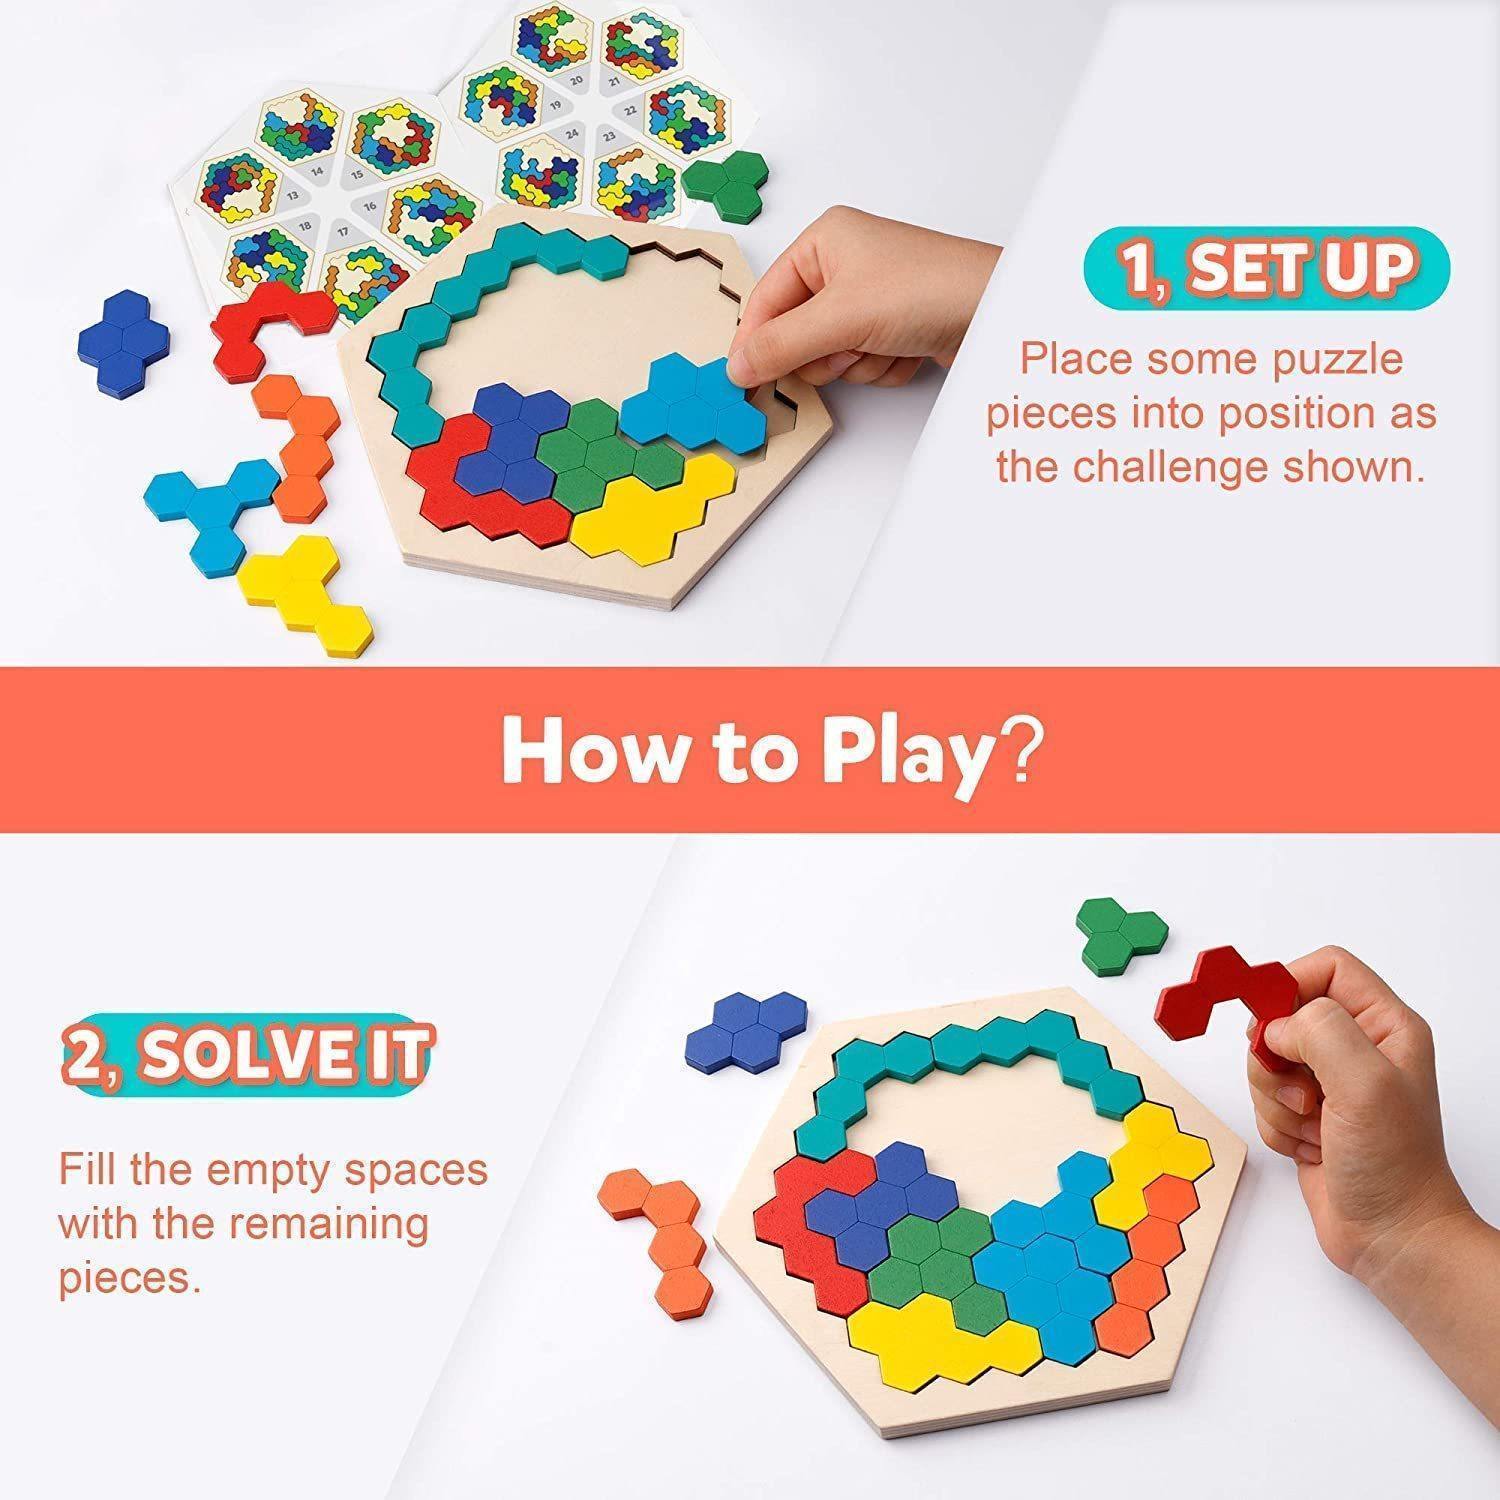 Drewniane WielokąTne Geometryczne Puzzle Zabawki - Pellelife